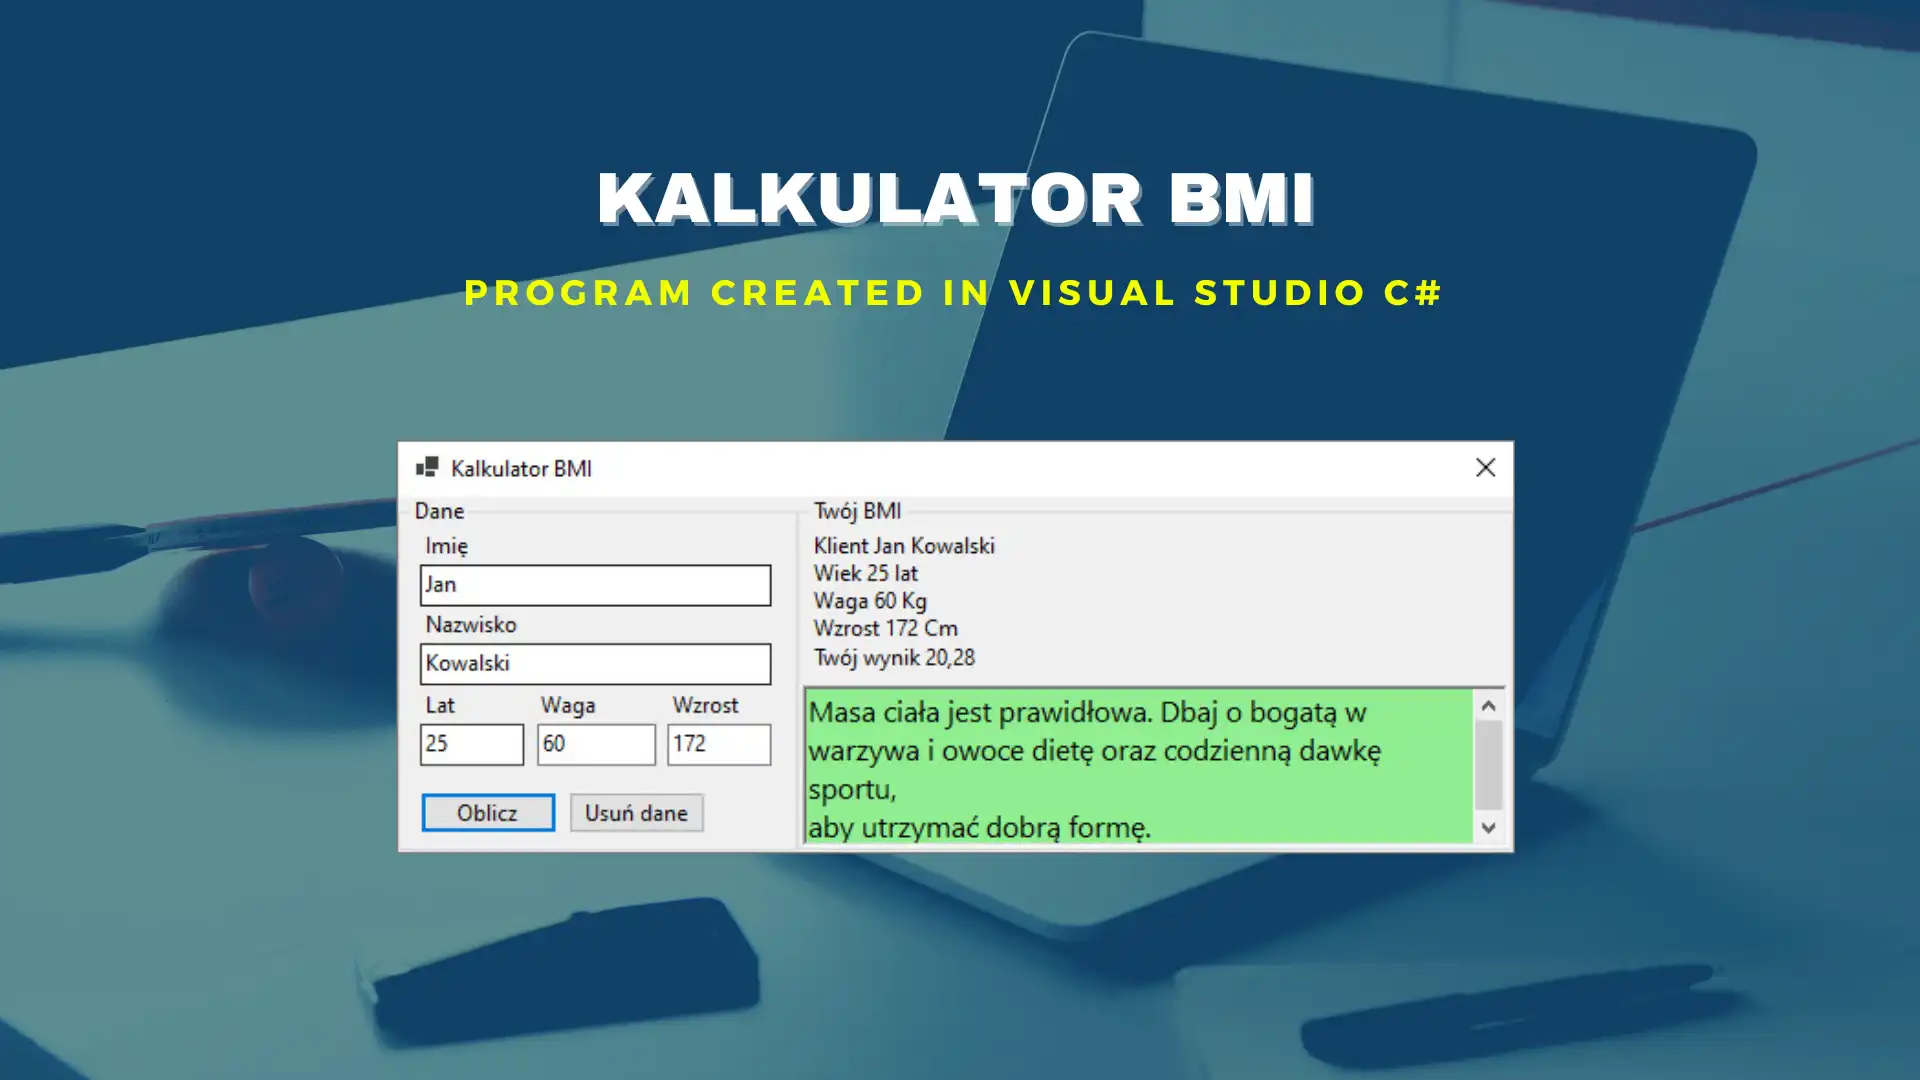 ওয়েব টুল বা ওয়েব অ্যাপ BMI Kalkulator ডাউনলোড করুন